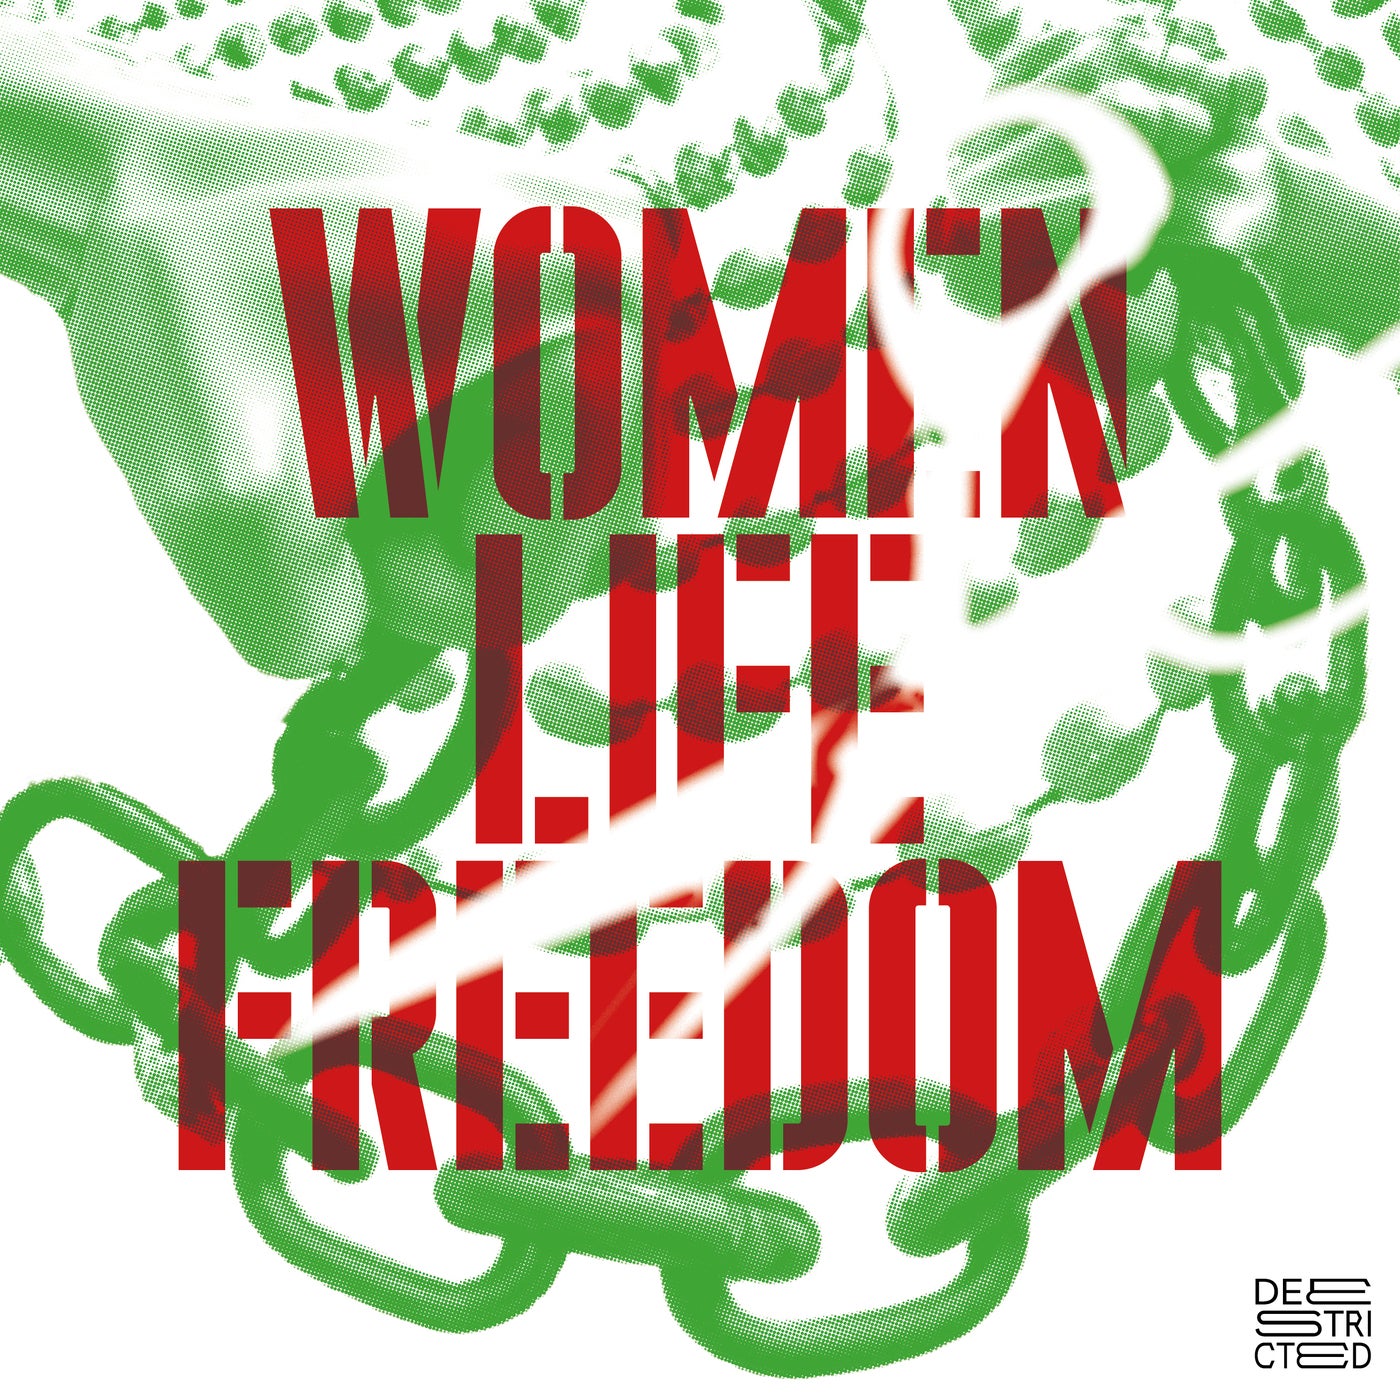 WOMEN LIFE FREEDOM - Digital